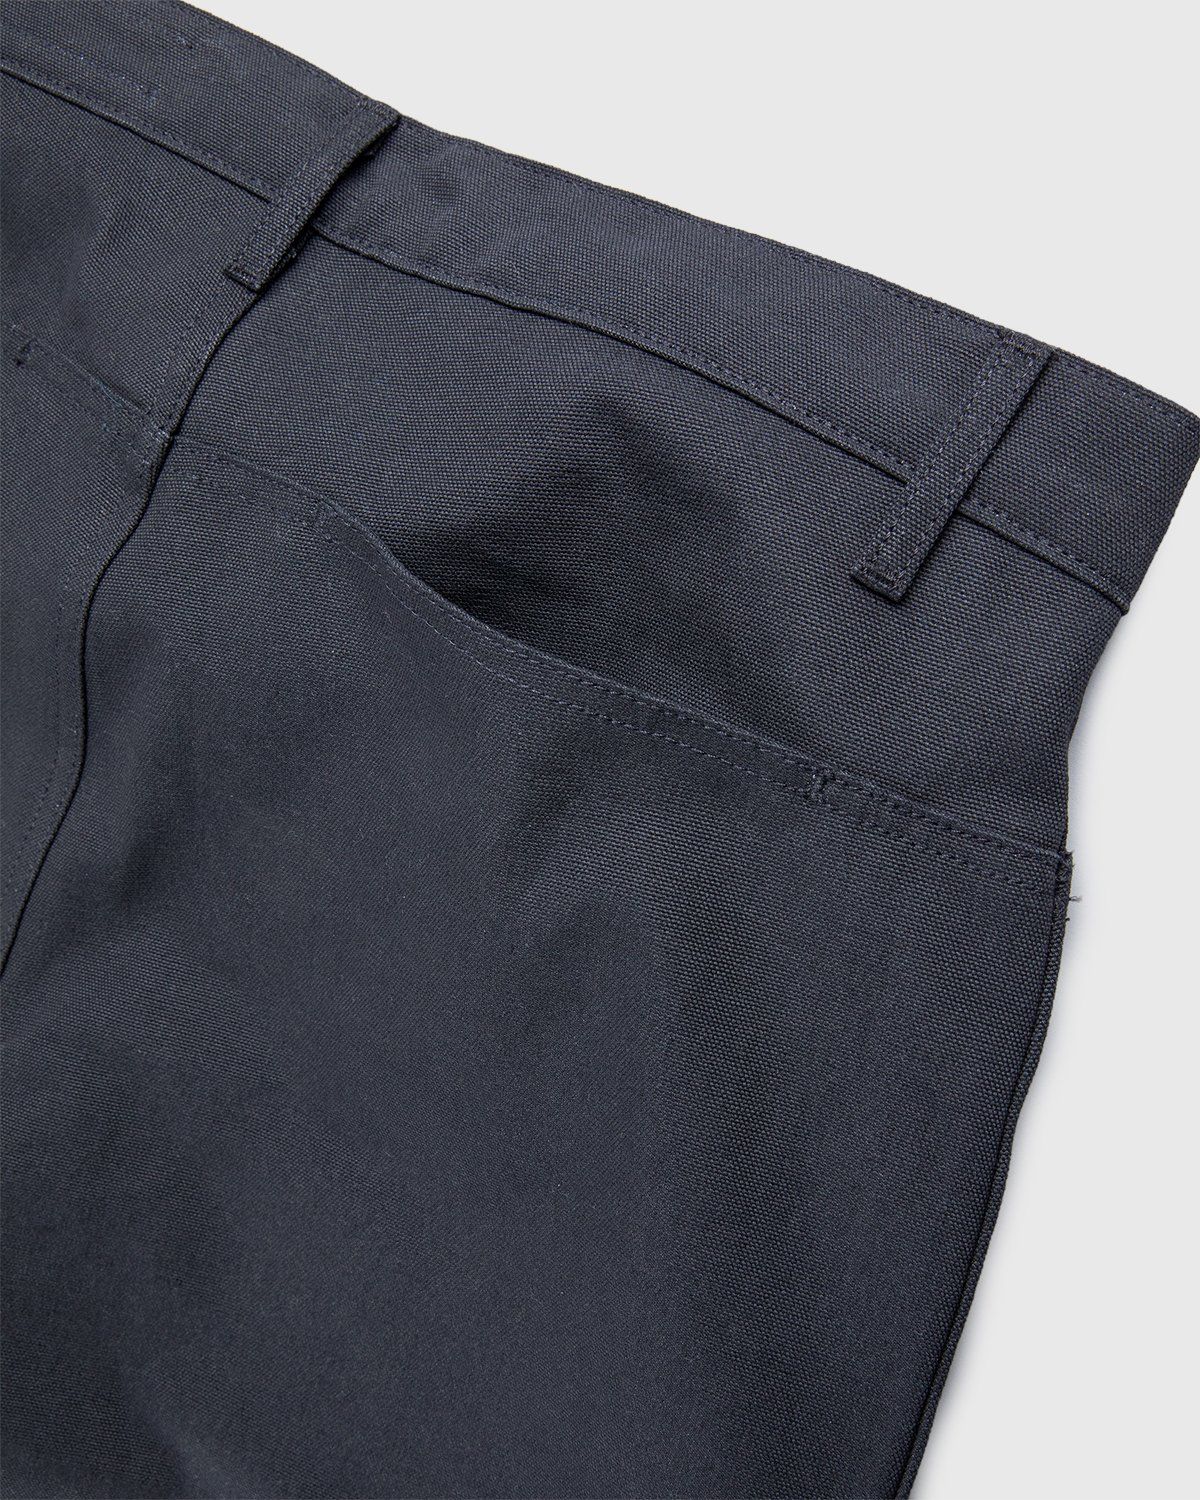 Darryl Brown – Trouser Vintage Black - Pants - Black - Image 4